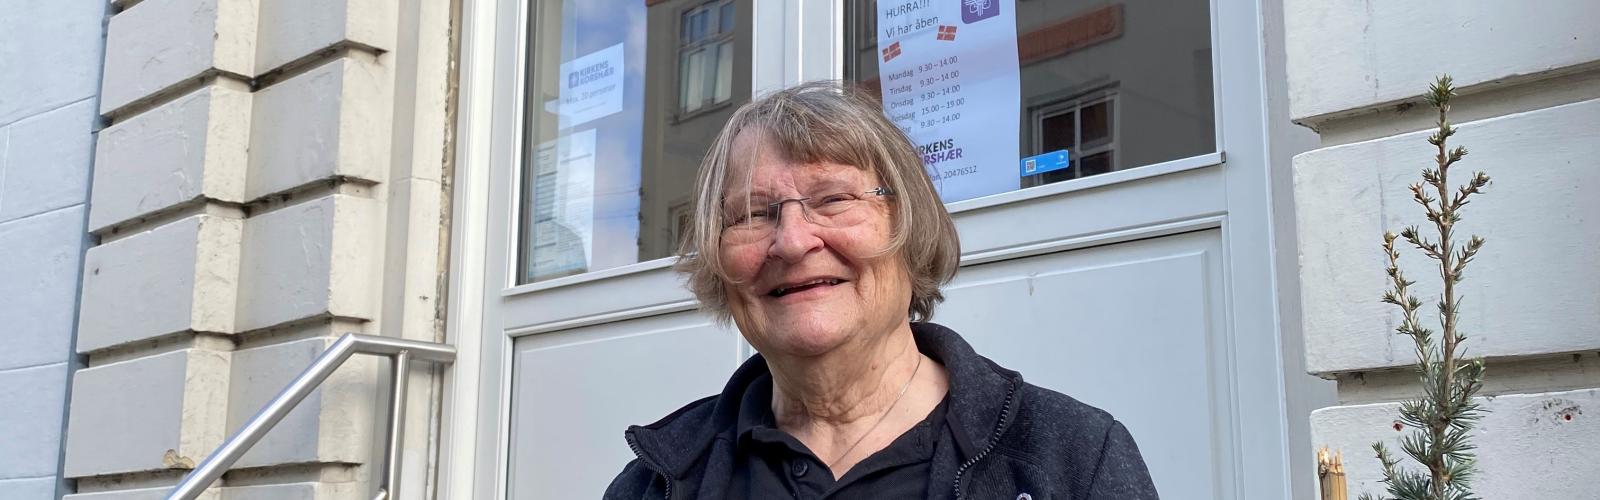 Den pensionerede sygeplejerske Birgitte Lauritzen arbejder som frivillig i Kirkens Korshærs varmestue i Nykøbing Falster.